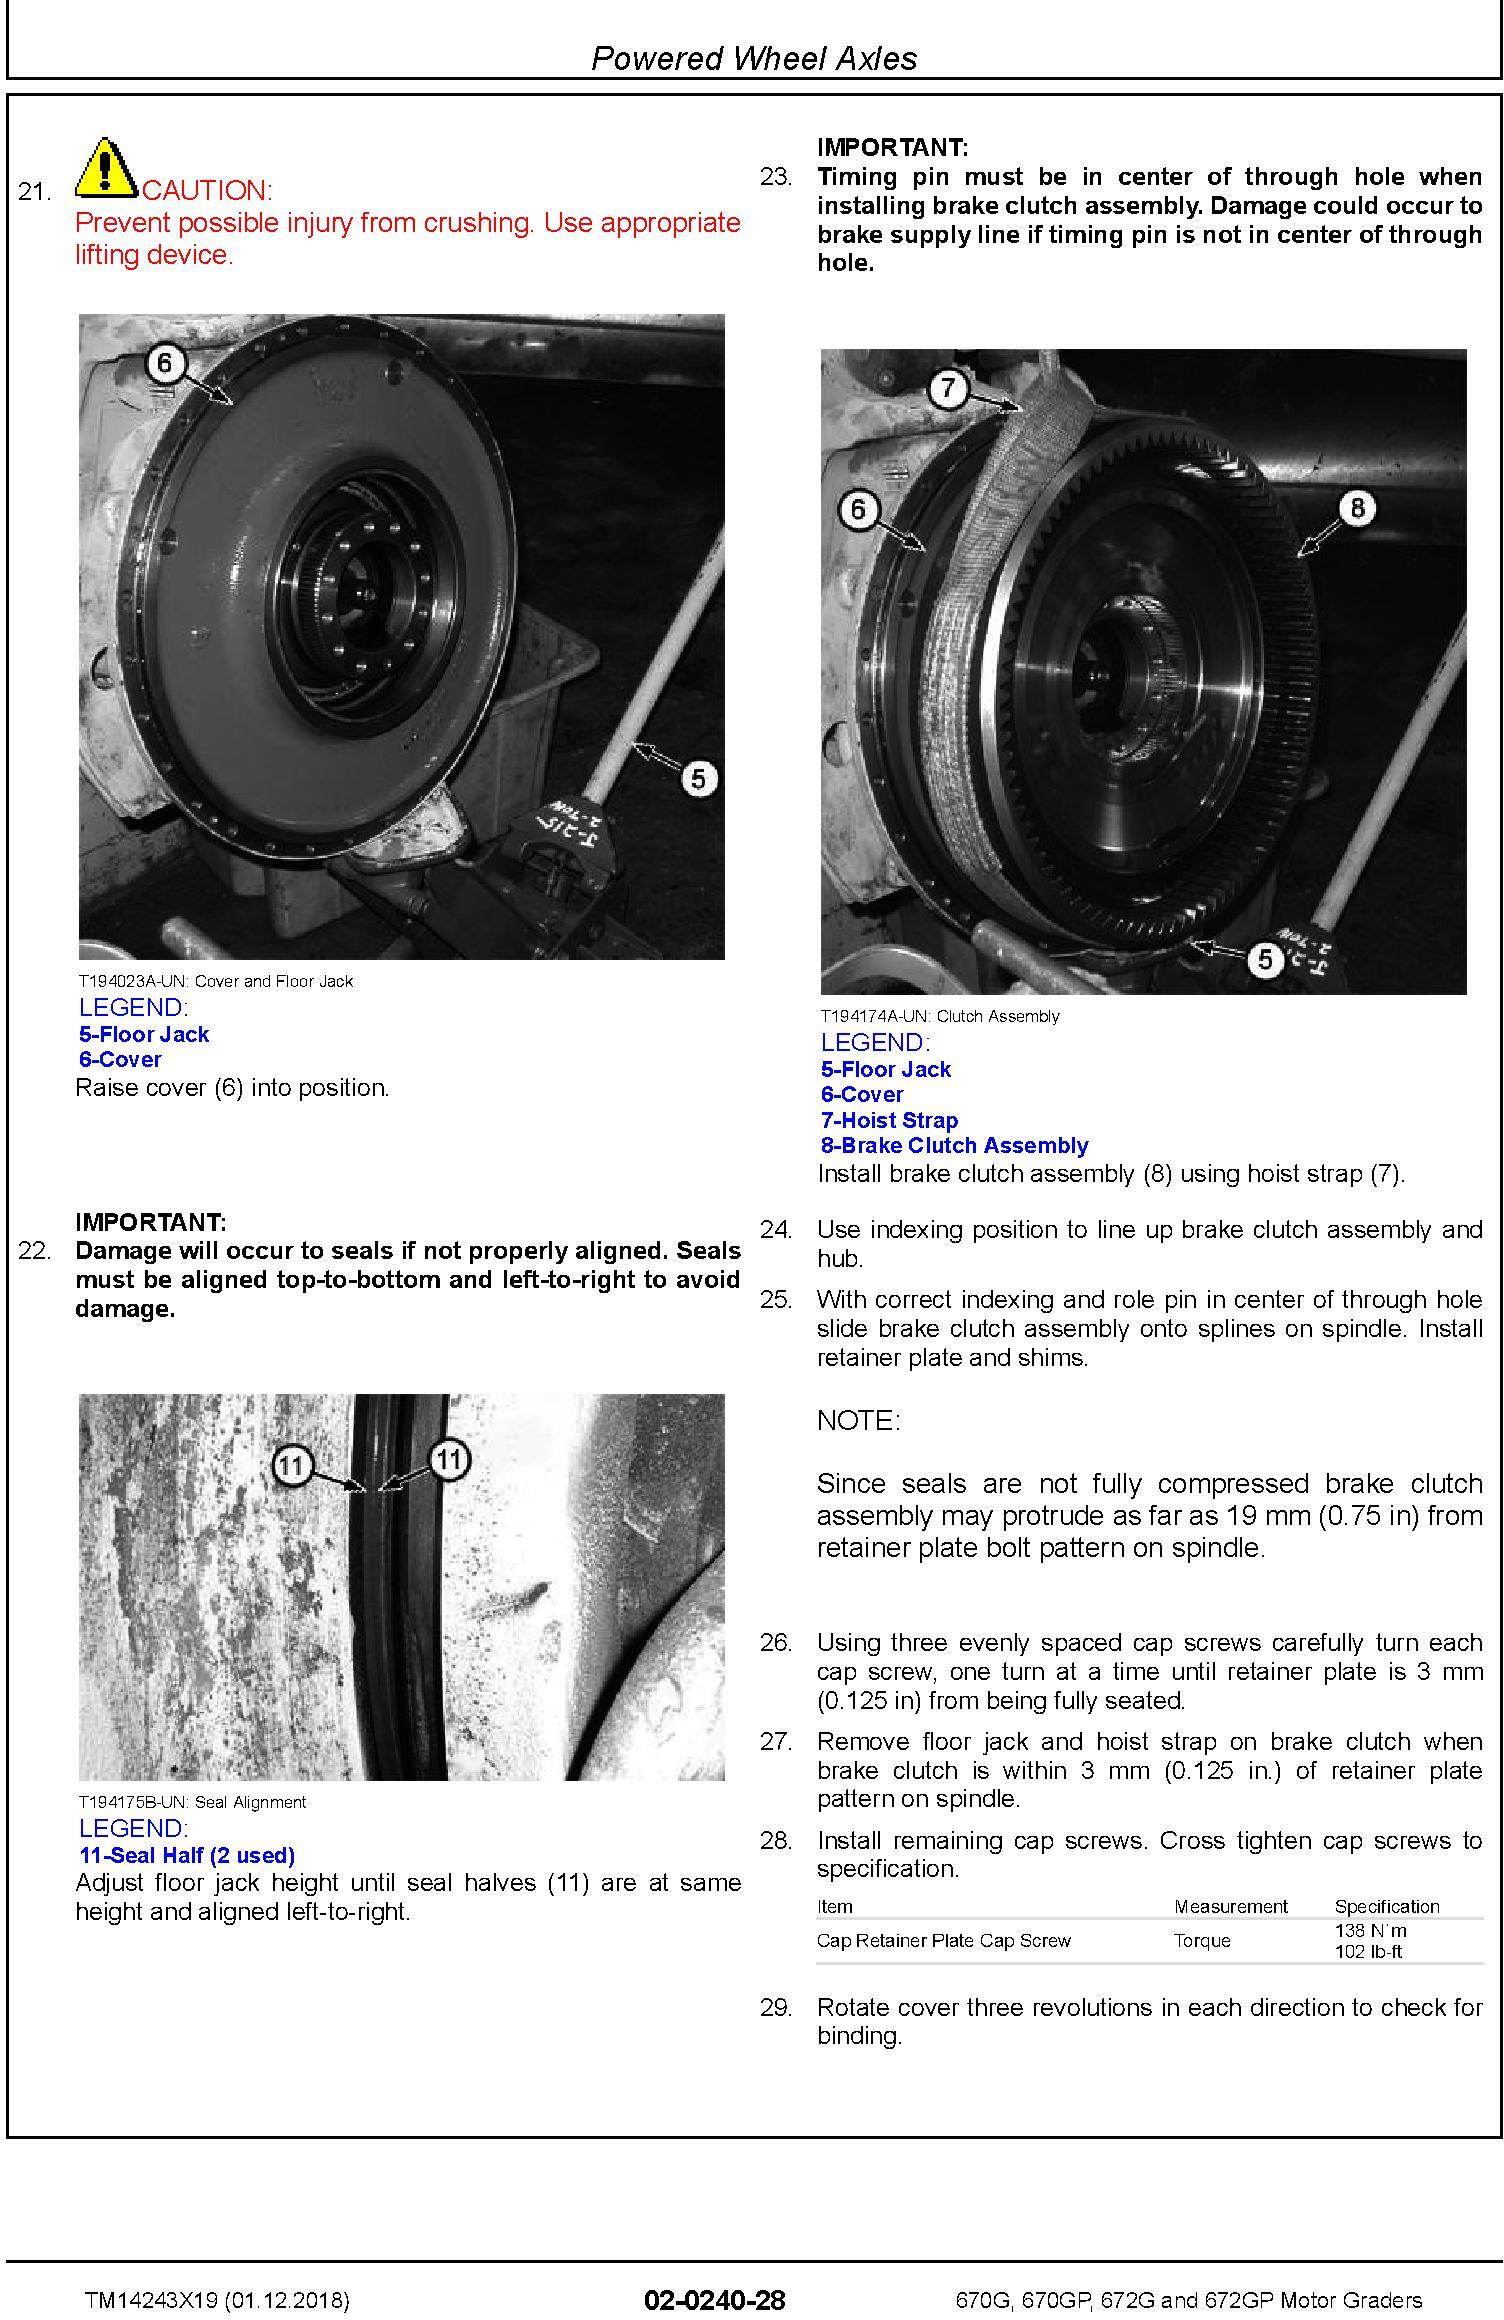 John Deere 670G, 670GP, 672G, 672GP (SN.F680878-, L700954-) Motor Graders Repair Manual (TM14243X19) - 3